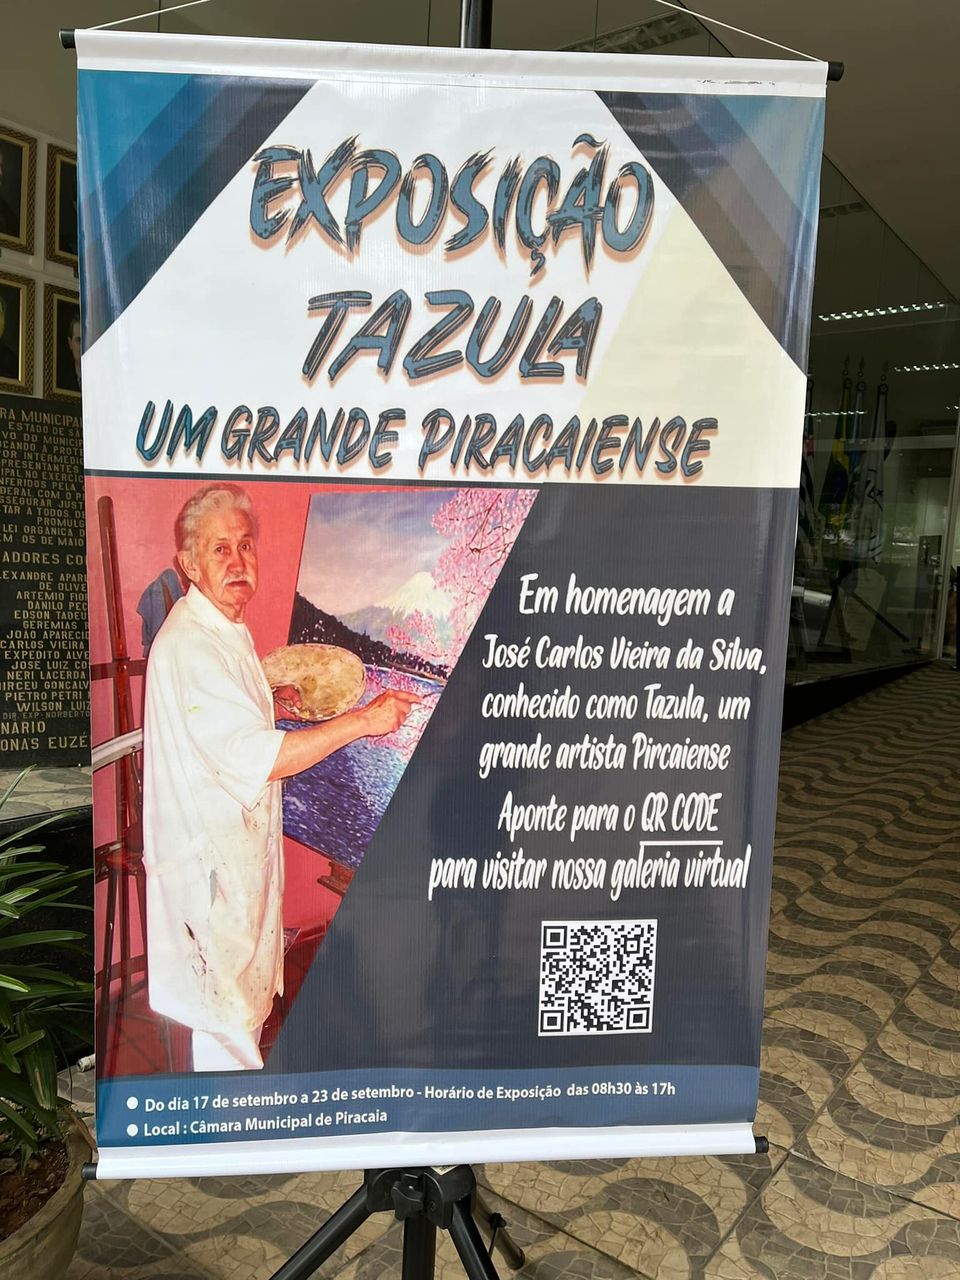 A Câmara Municipal de Piracaia convida toda população para prestigiar a exposição de quadros em homenagem ao nosso querido Tazula.